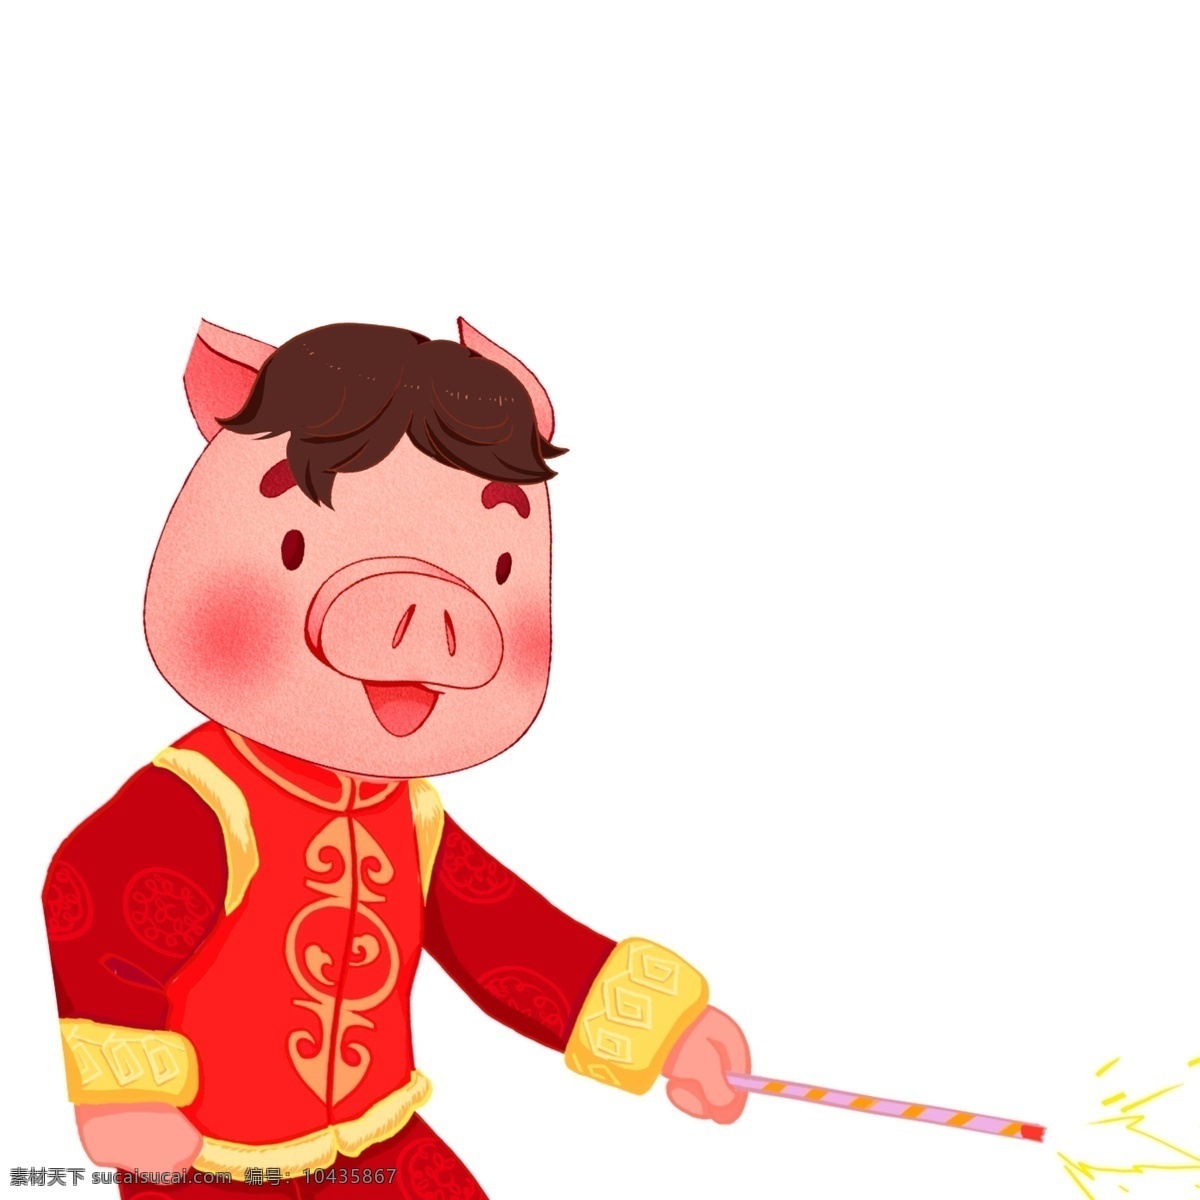 玩 仙女 棒 的卡 通 猪 卡通 喜庆 春节 过年 插画 新年 猪年 2019年 小猪形象 猪年形象 仙女棒